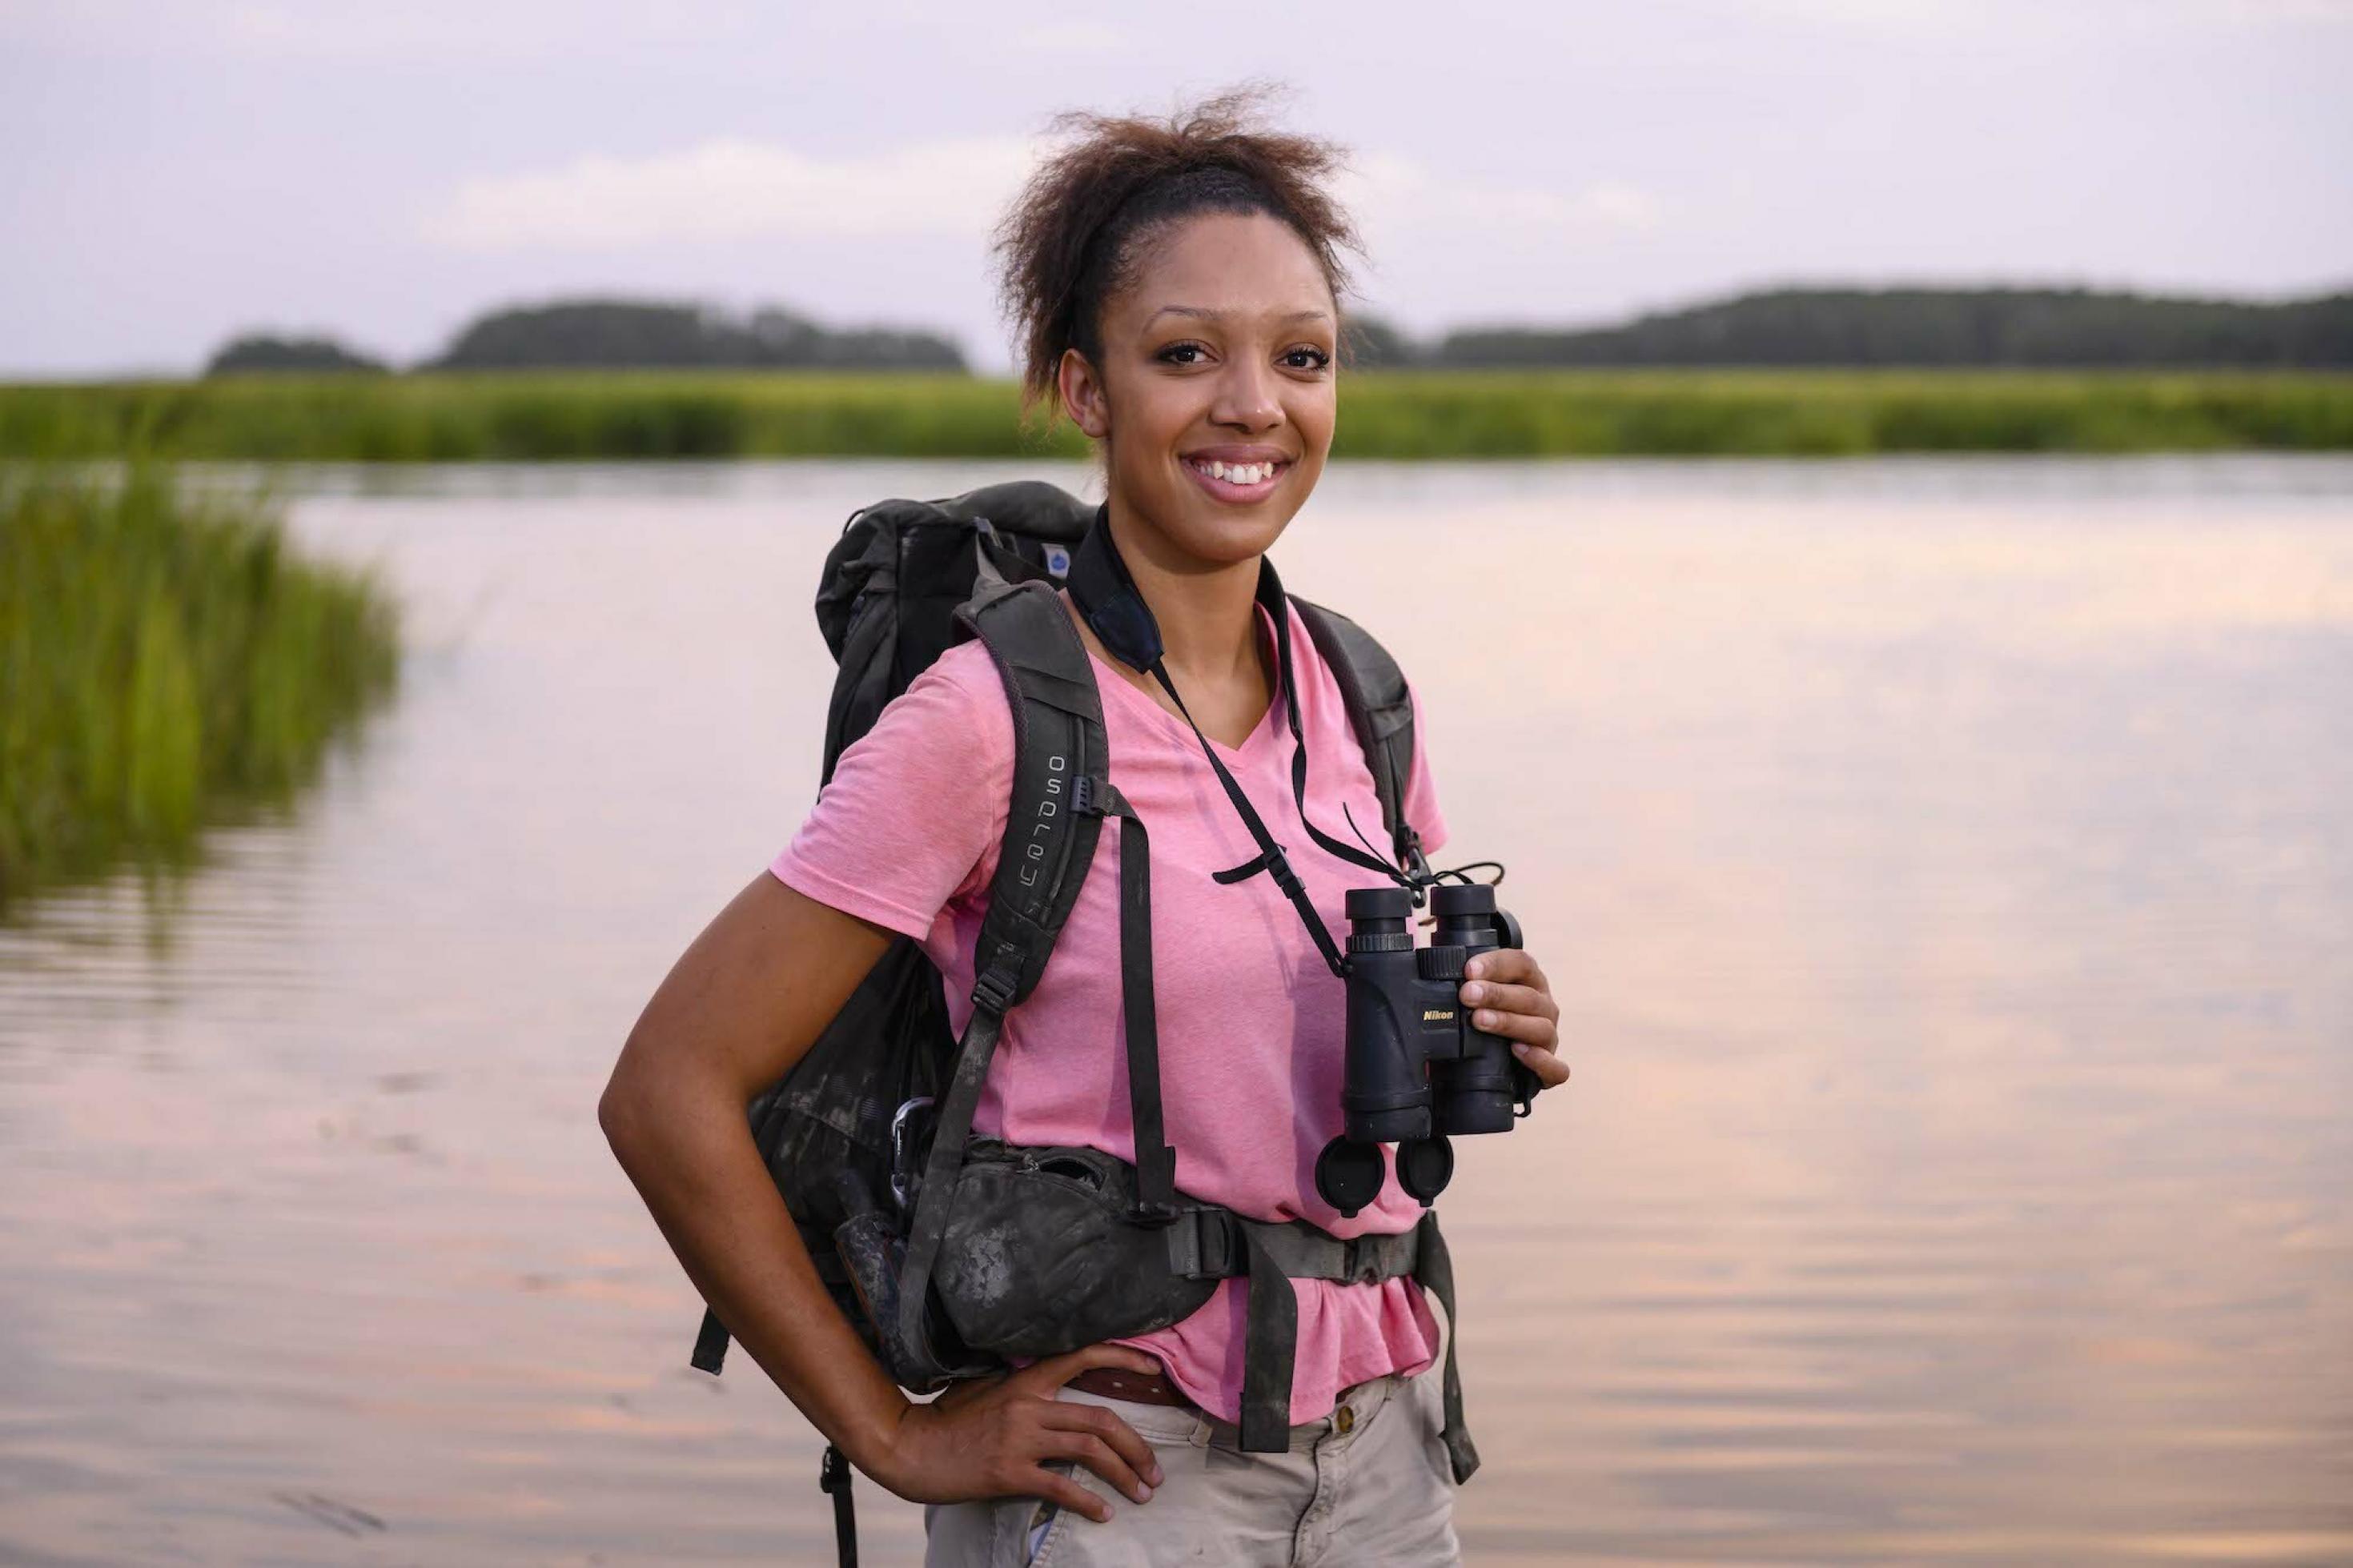 Zu sehen ist Corina Newsome mit einem Fernglas um den Hals in der Natur, vor einem Gewässer.